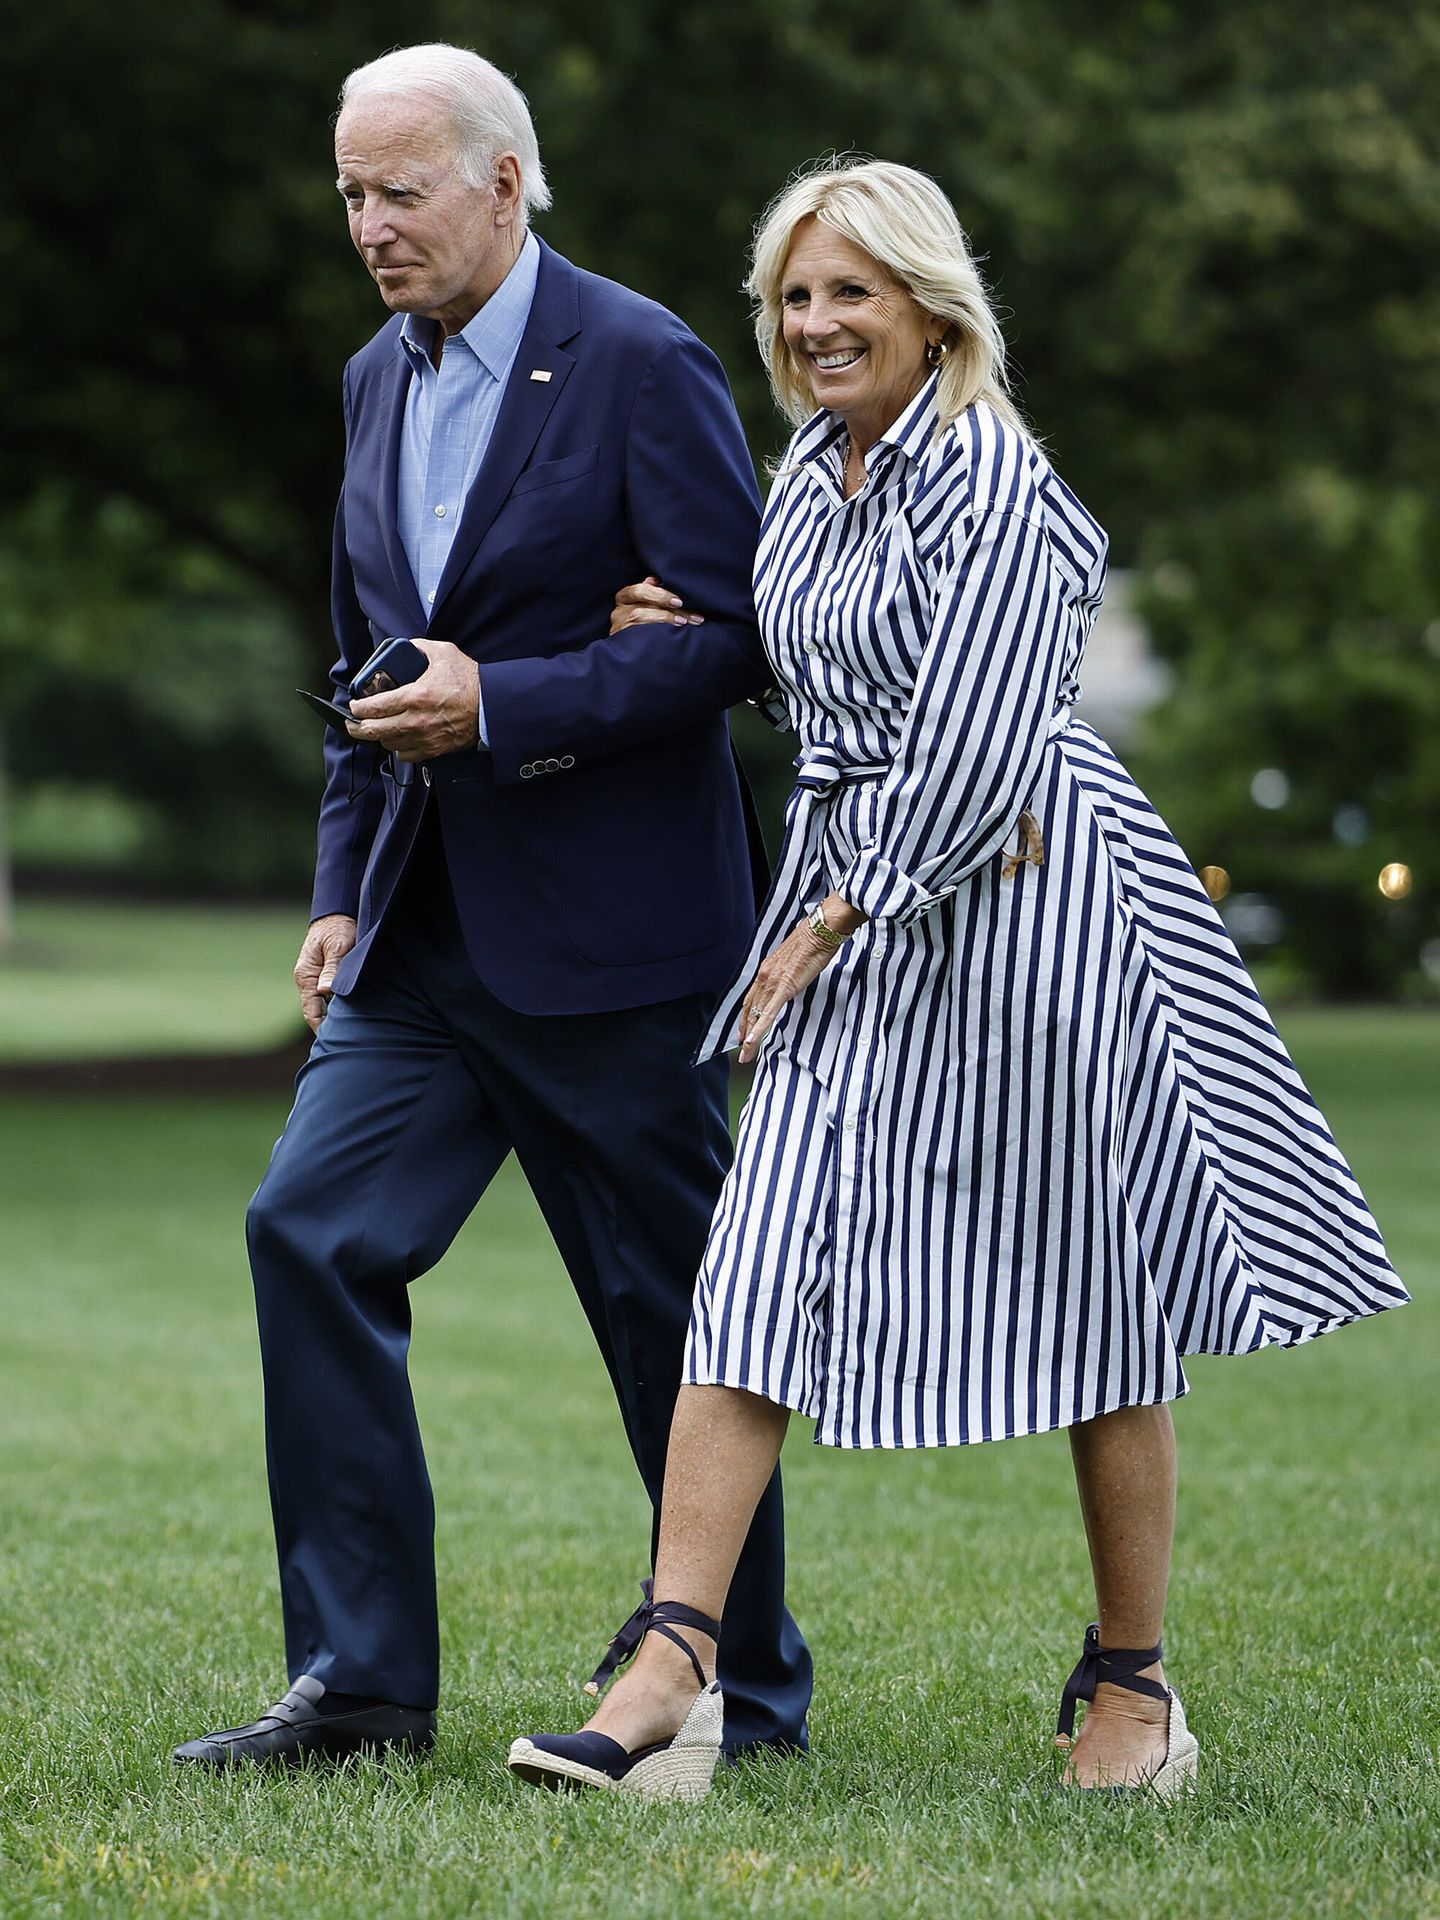 El look completo de Jill Biden, con vestido camisero y alpargatas. (Getty/Chip Somodevilla)